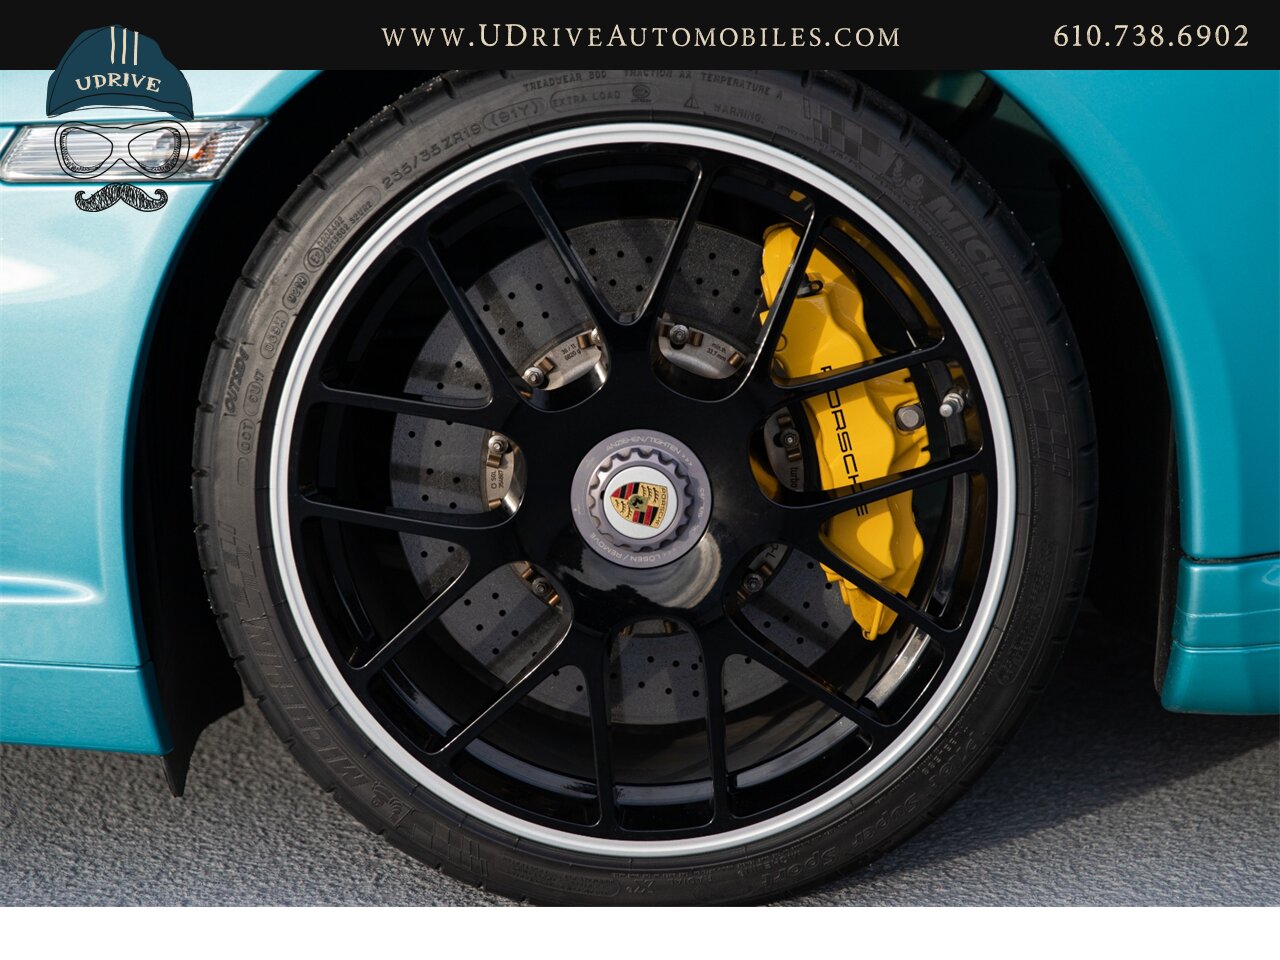 2012 Porsche 911 Turbo S 997.2 RARE Ipanema Blue 13k Miles  Vent Sts Carbon Fiber Pntd Exter Pkg Blk Centerlock Whls $173k MSRP - Photo 49 - West Chester, PA 19382